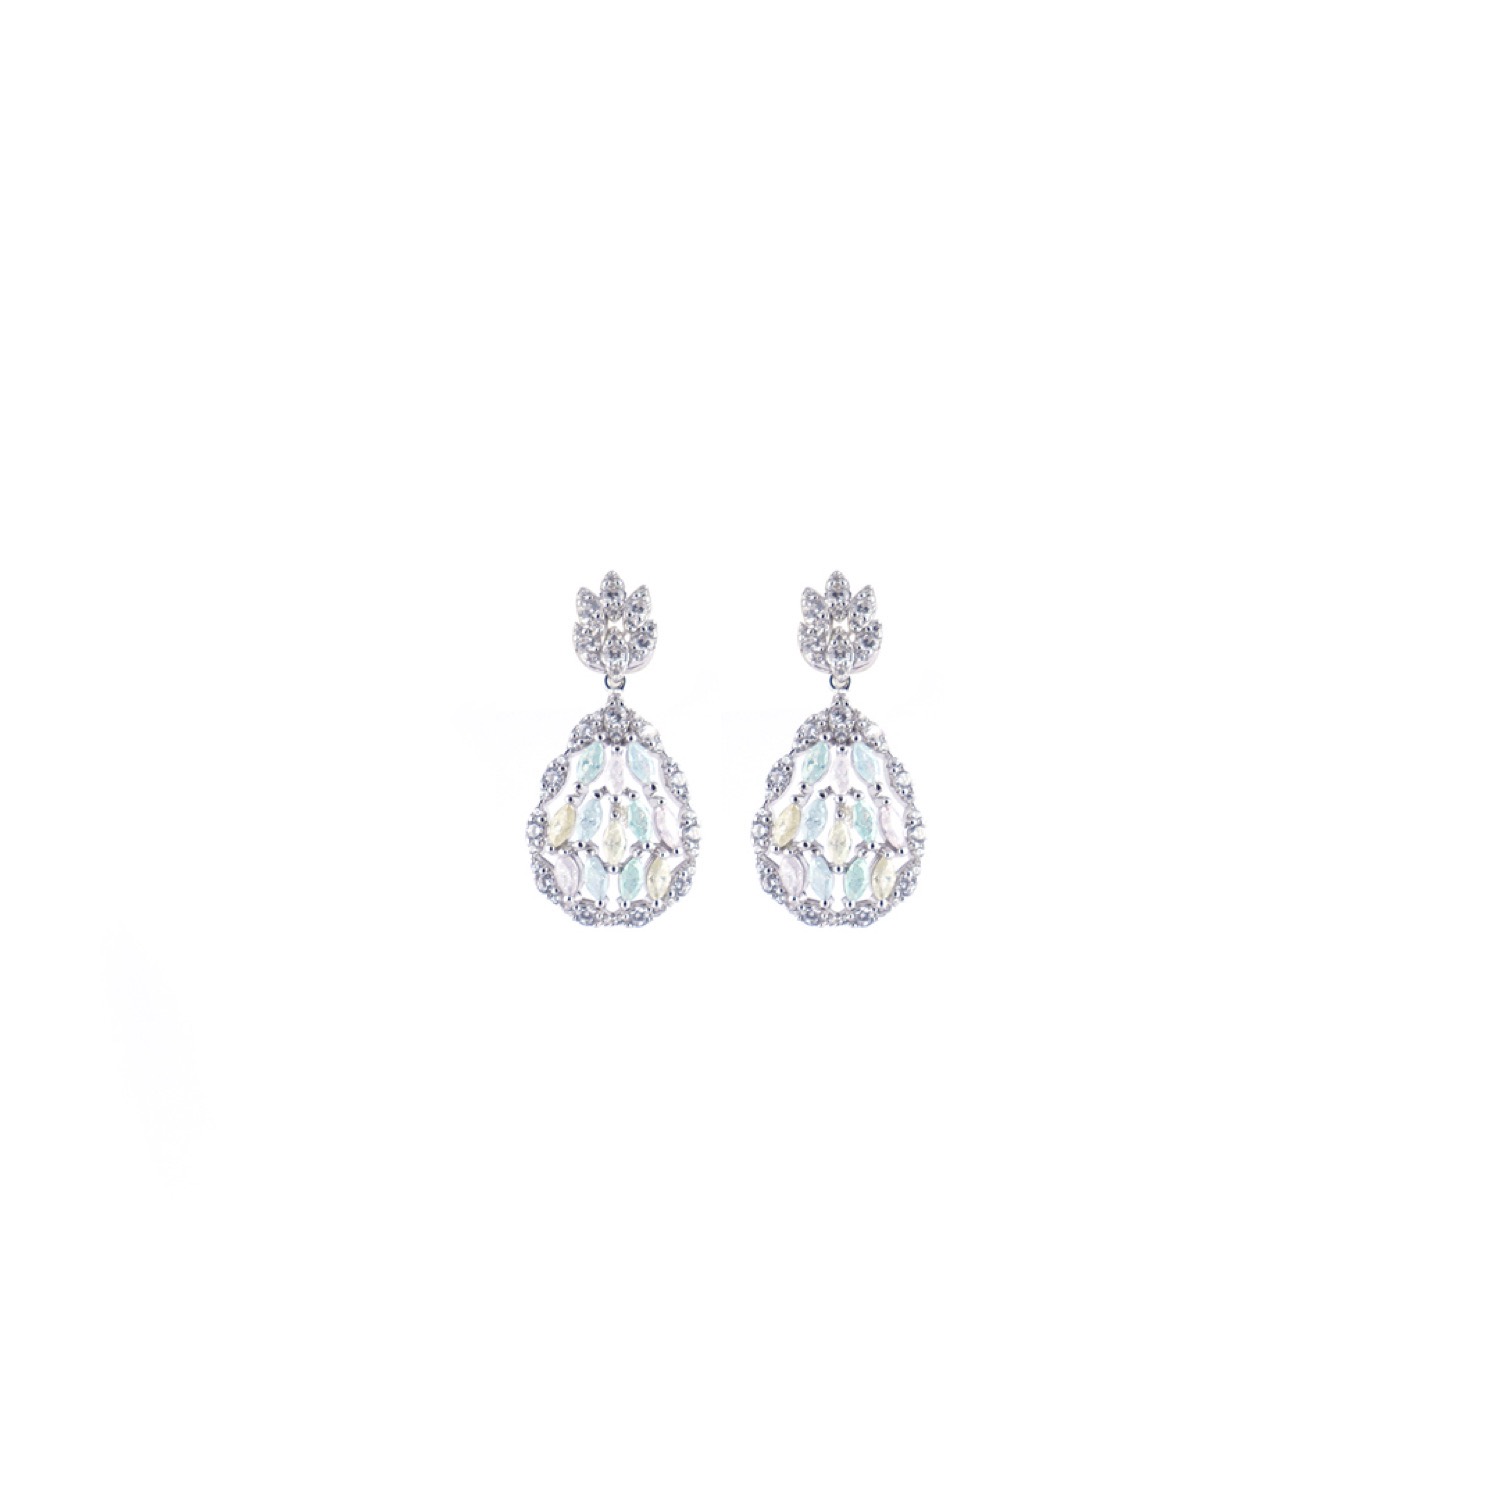 varam_earrings_102022_light_color_marquise_cut_and_white_stone_dangler_silver_earrings-1